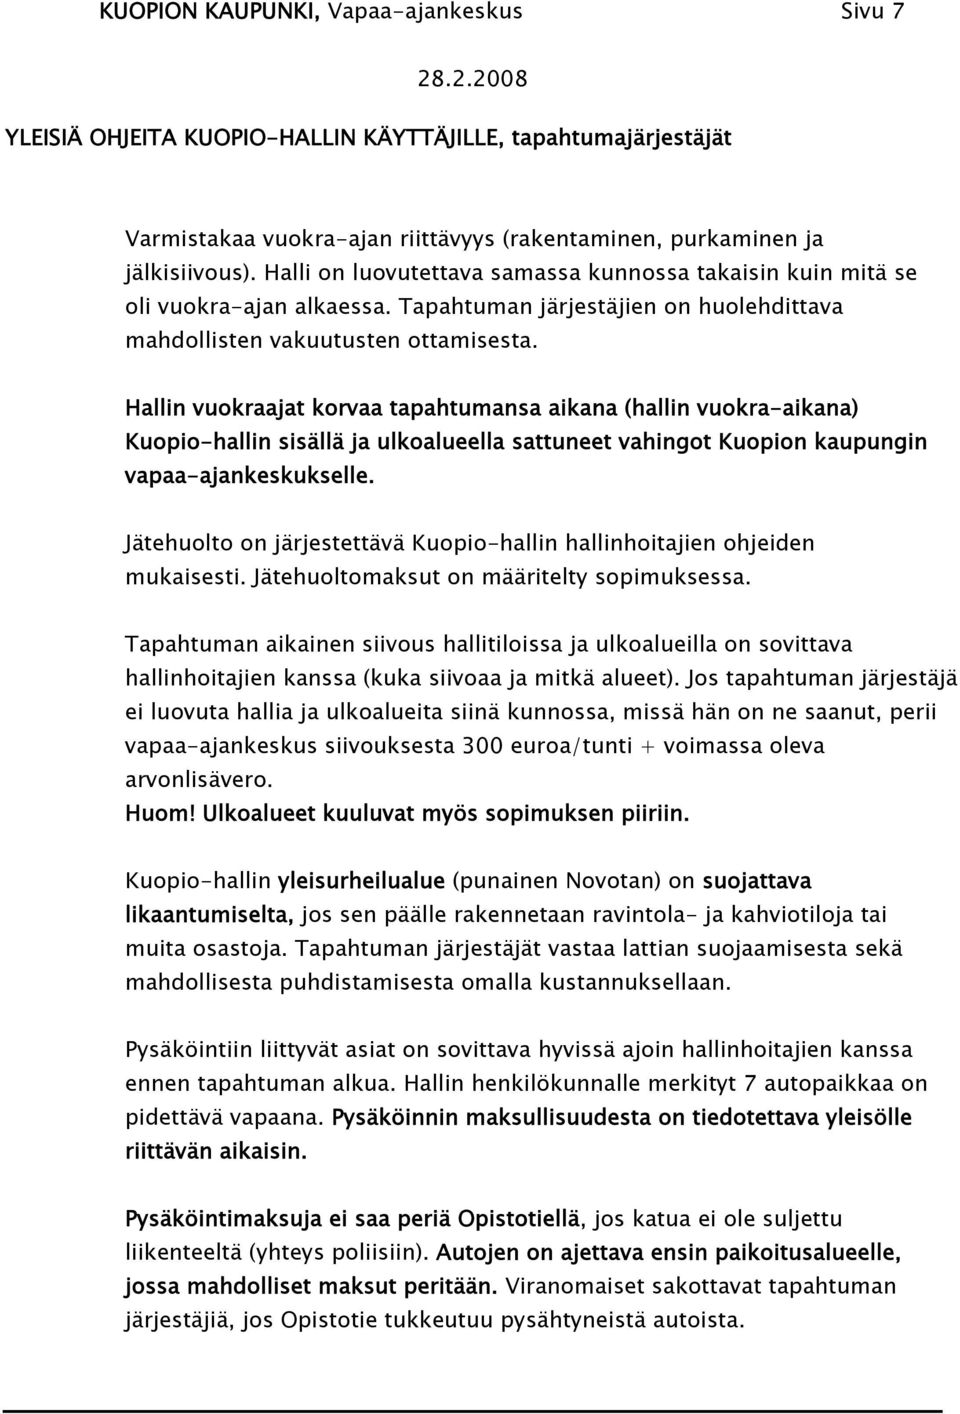 Hallin vuokraajat korvaa tapahtumansa aikana (hallin vuokra-aikana) Kuopio-hallin sisällä ja ulkoalueella sattuneet vahingot Kuopion kaupungin vapaa-ajankeskukselle.